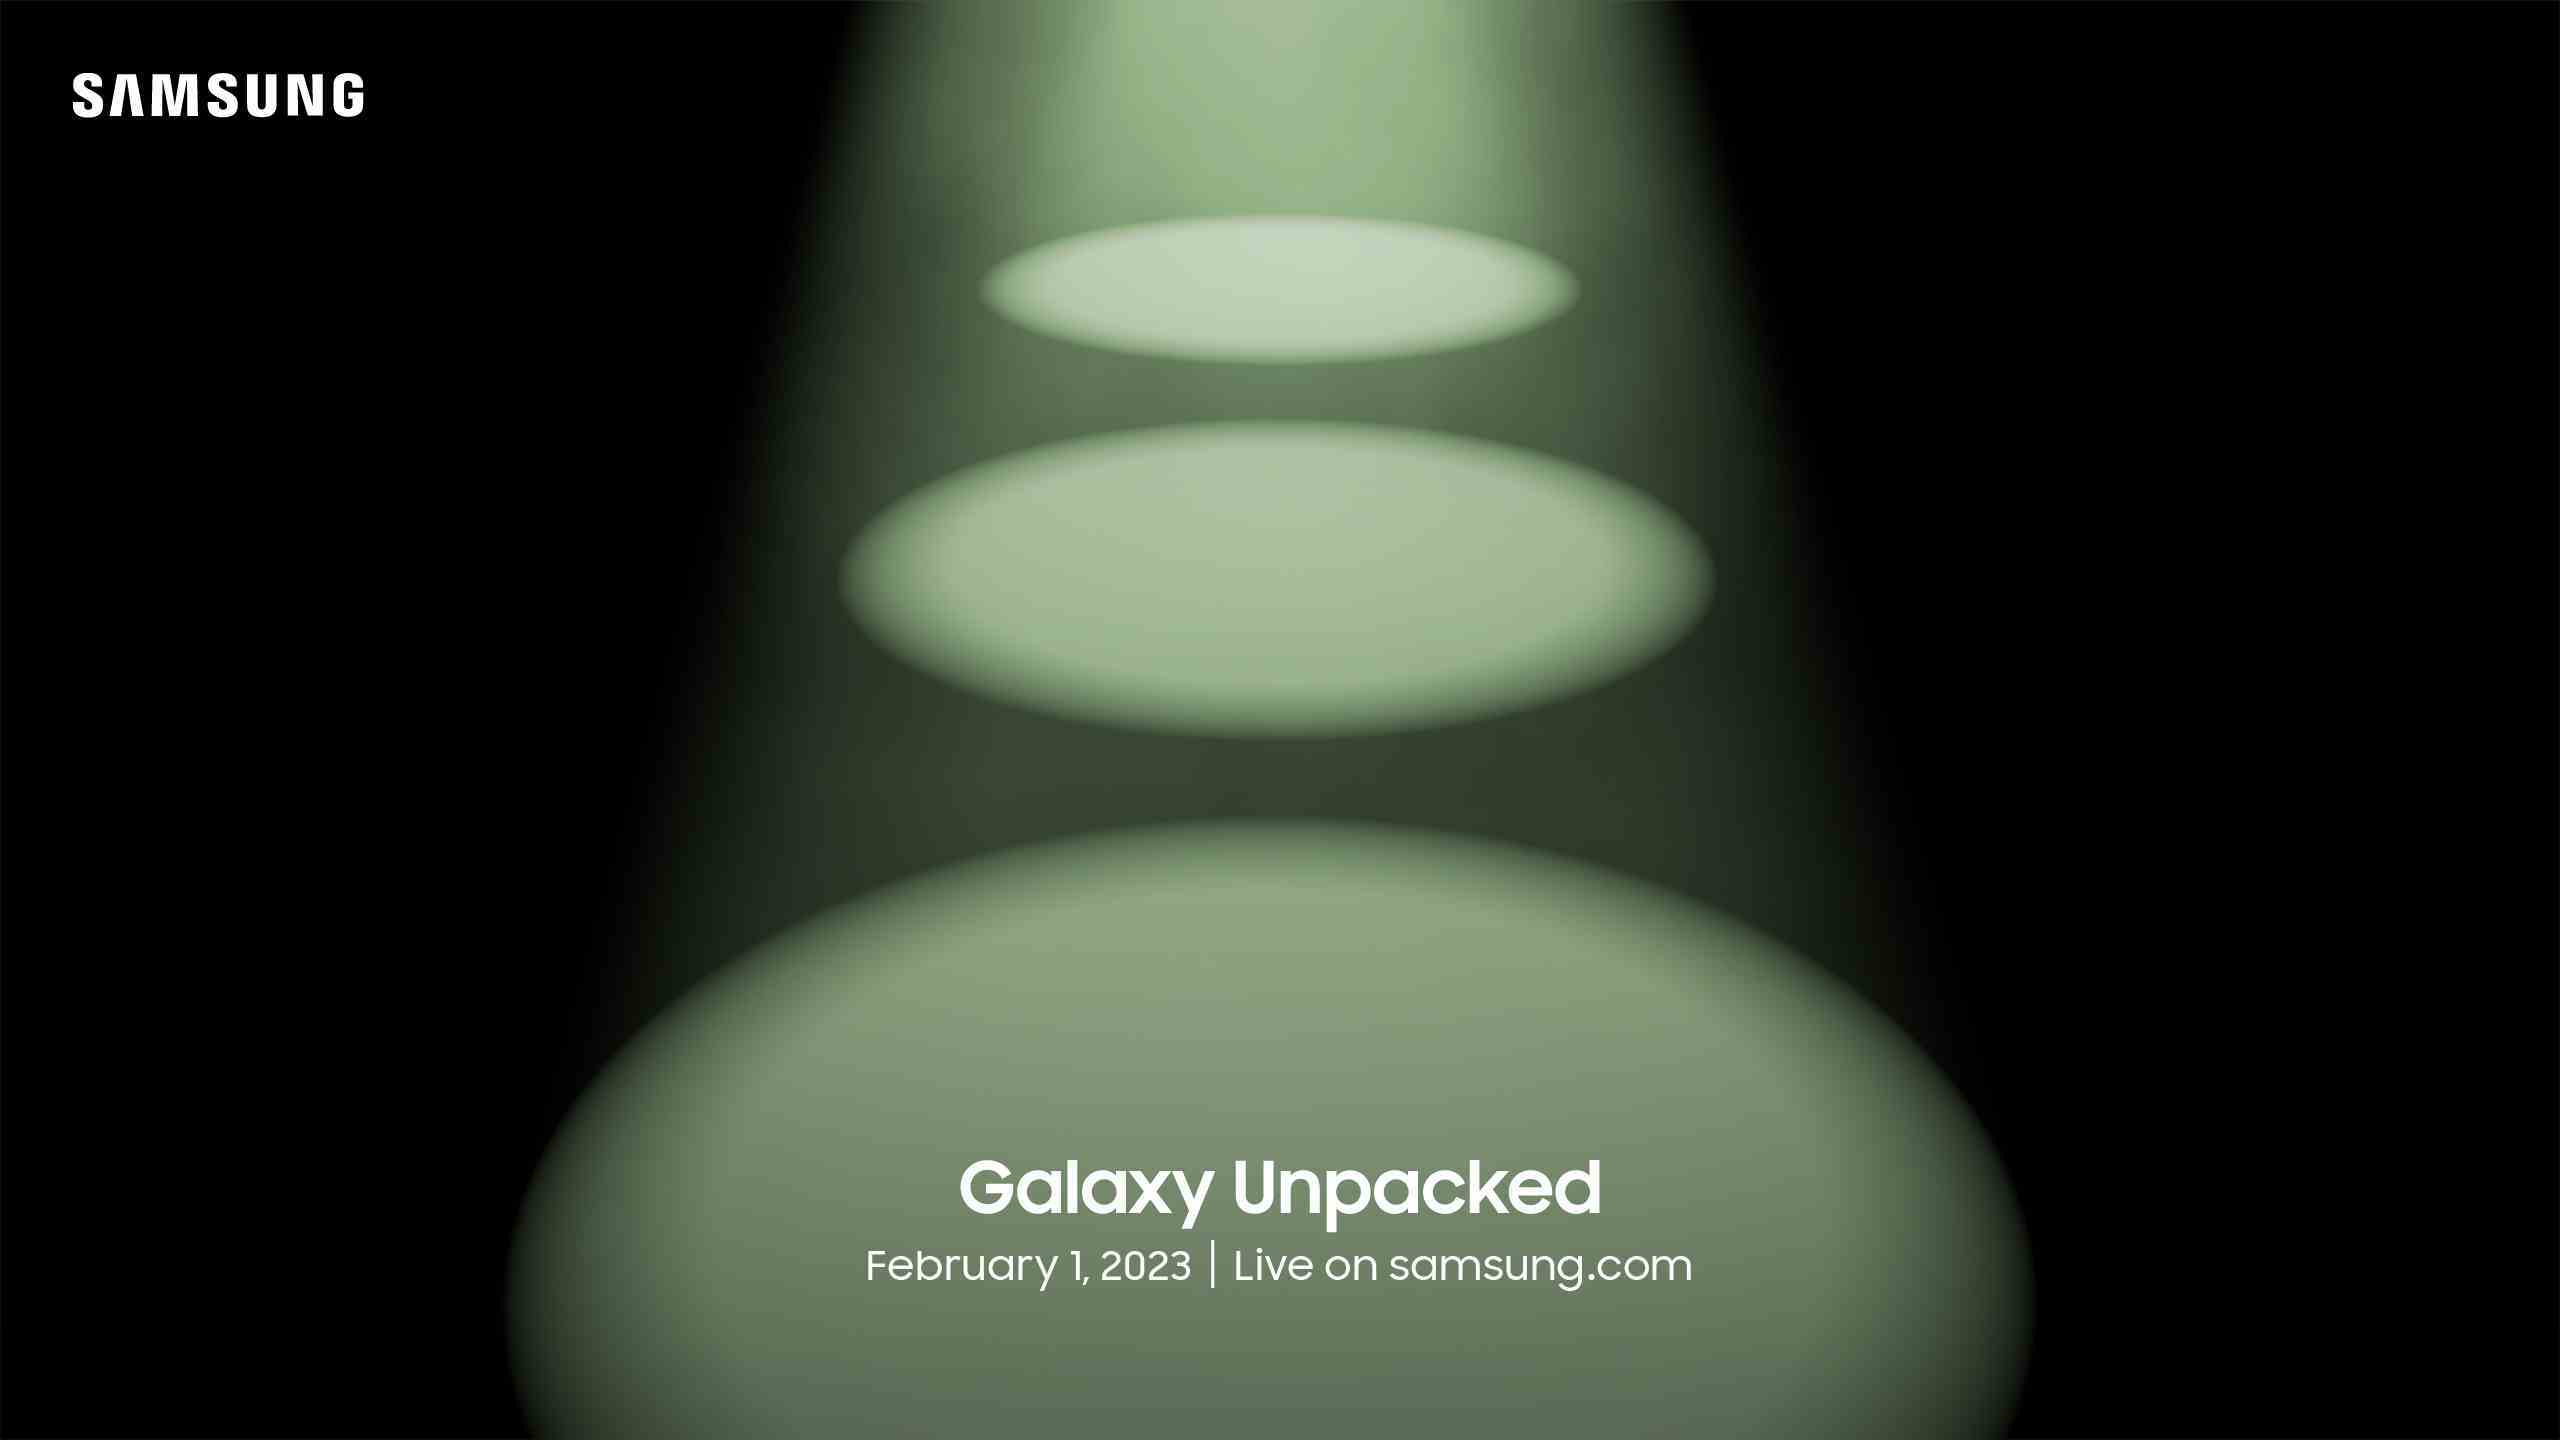 Koyu bir arka plan üzerinde yanan üç daireyi gösteren Samsung Galaxy Ambalajsız davetiyesi